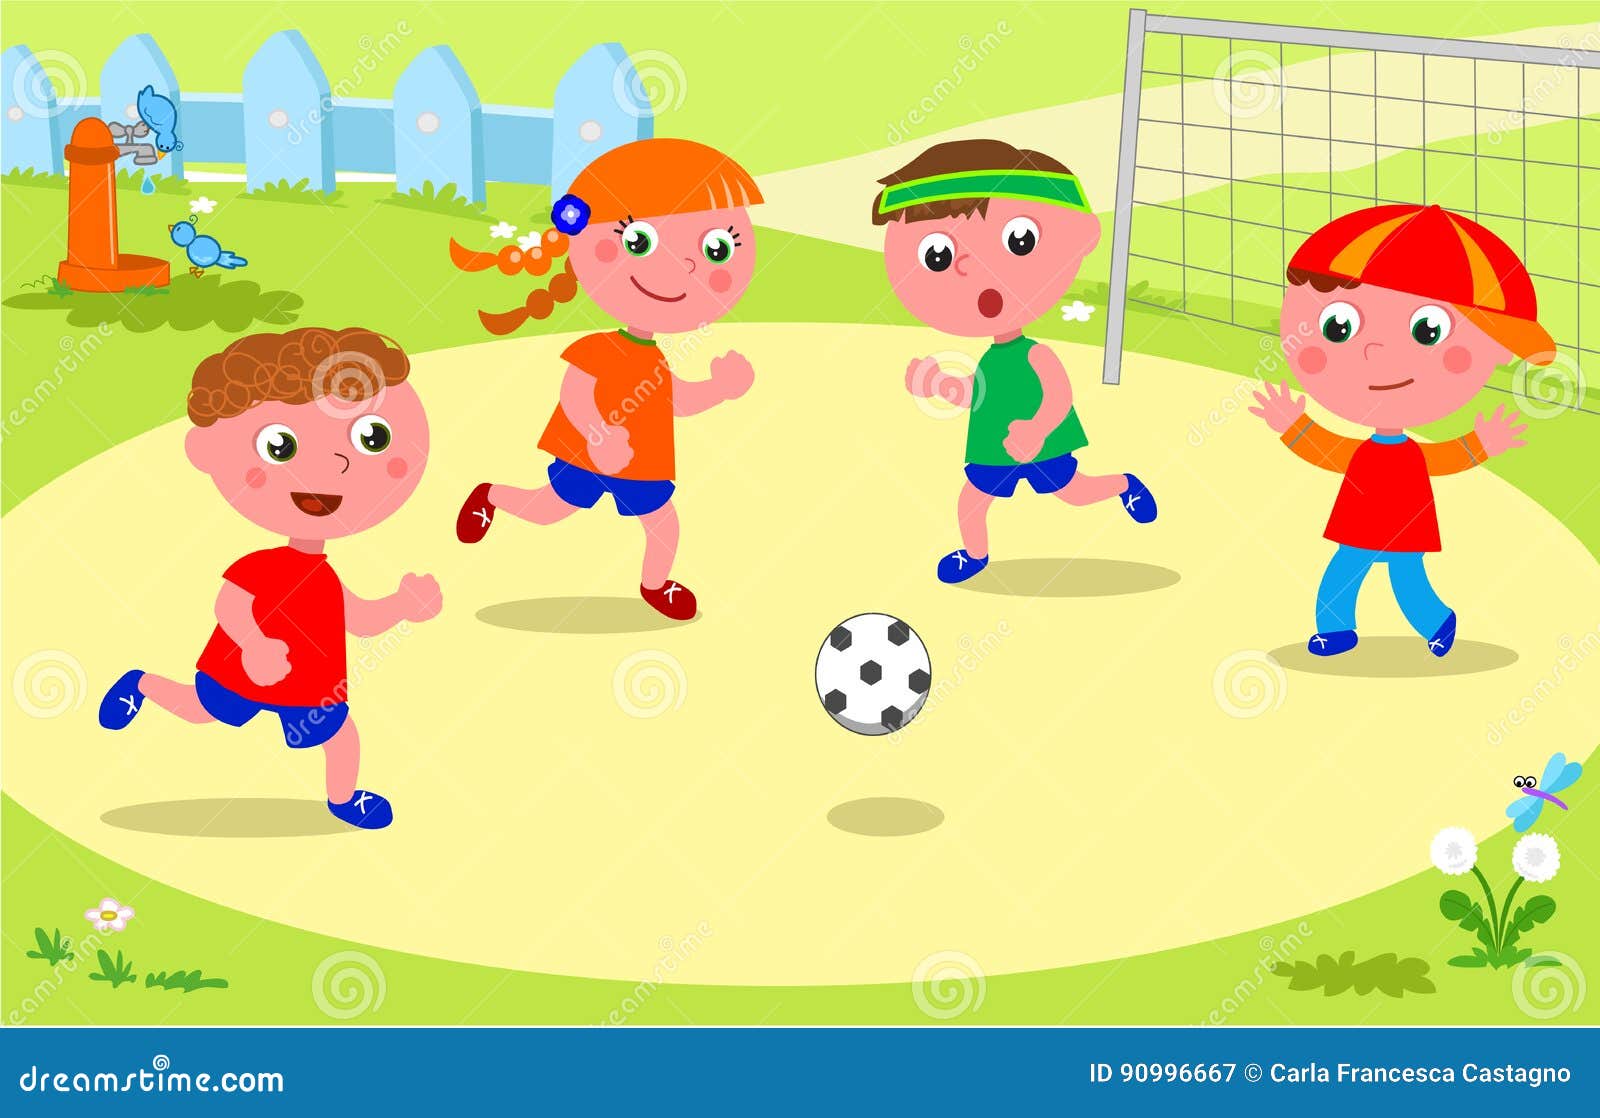 Как по английски будет играть в футбол. Дети играют в футбол рисунок. Футболист для детей дошкольного возраста-. Футбол картинки для детей. Дети играющие в футбол вектор.